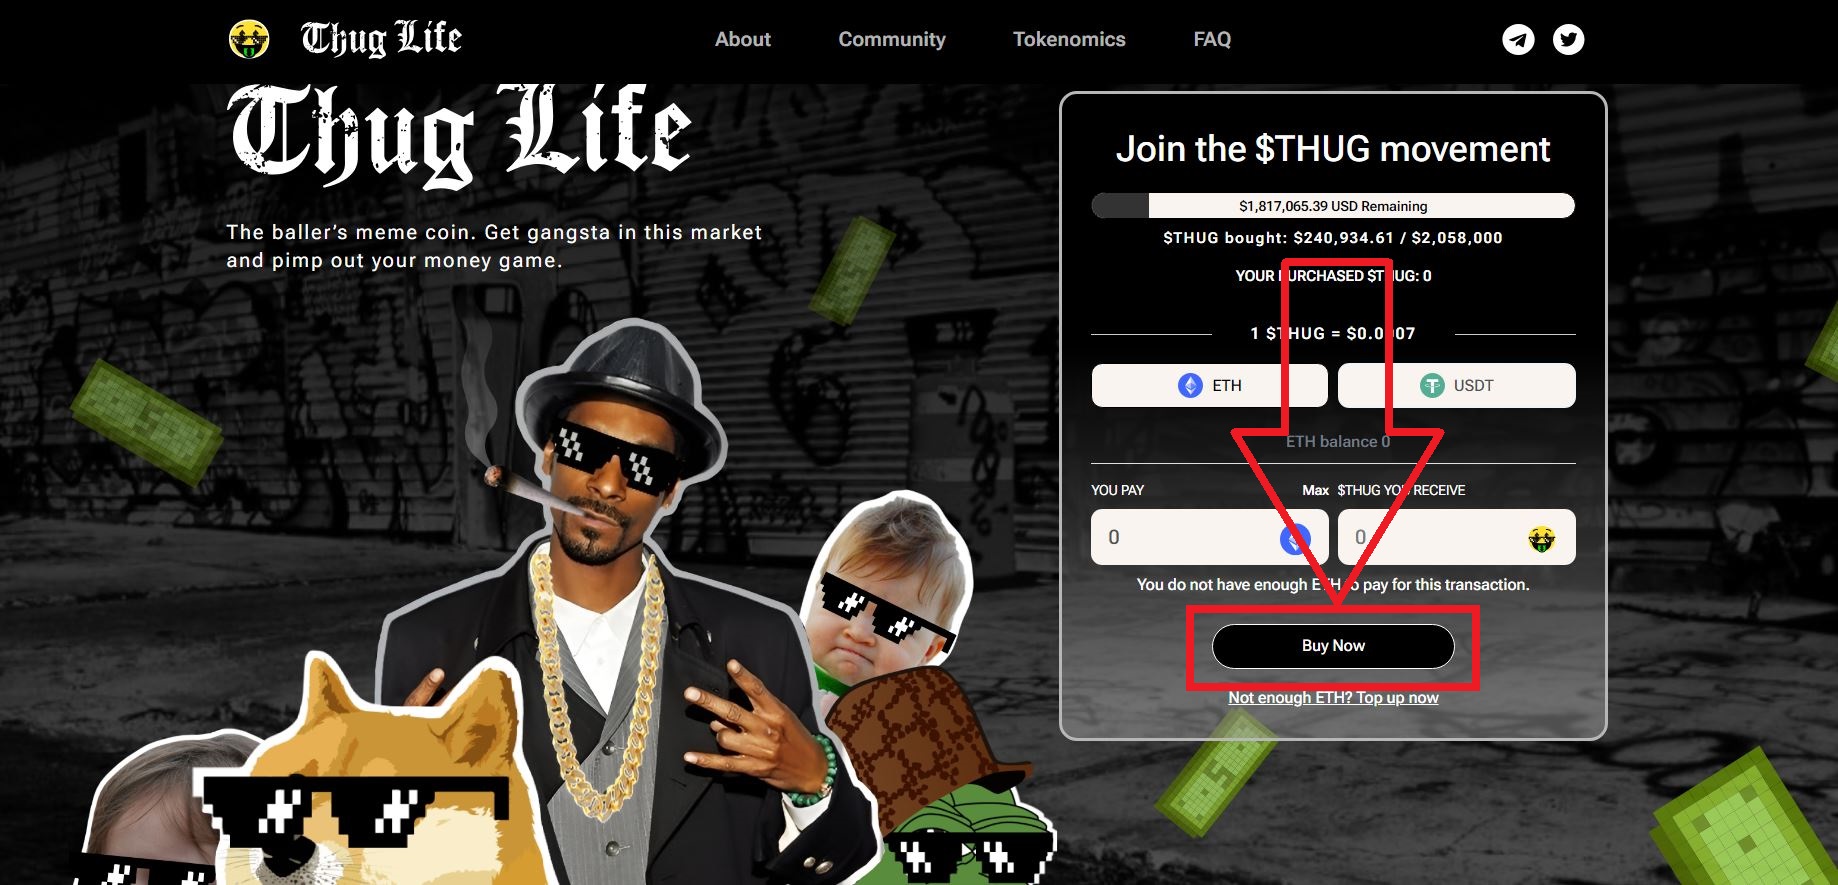 2. Accéder au site de Thug Life et cliquer sur Buy Now - Comment acheter des jetons de Thug Life